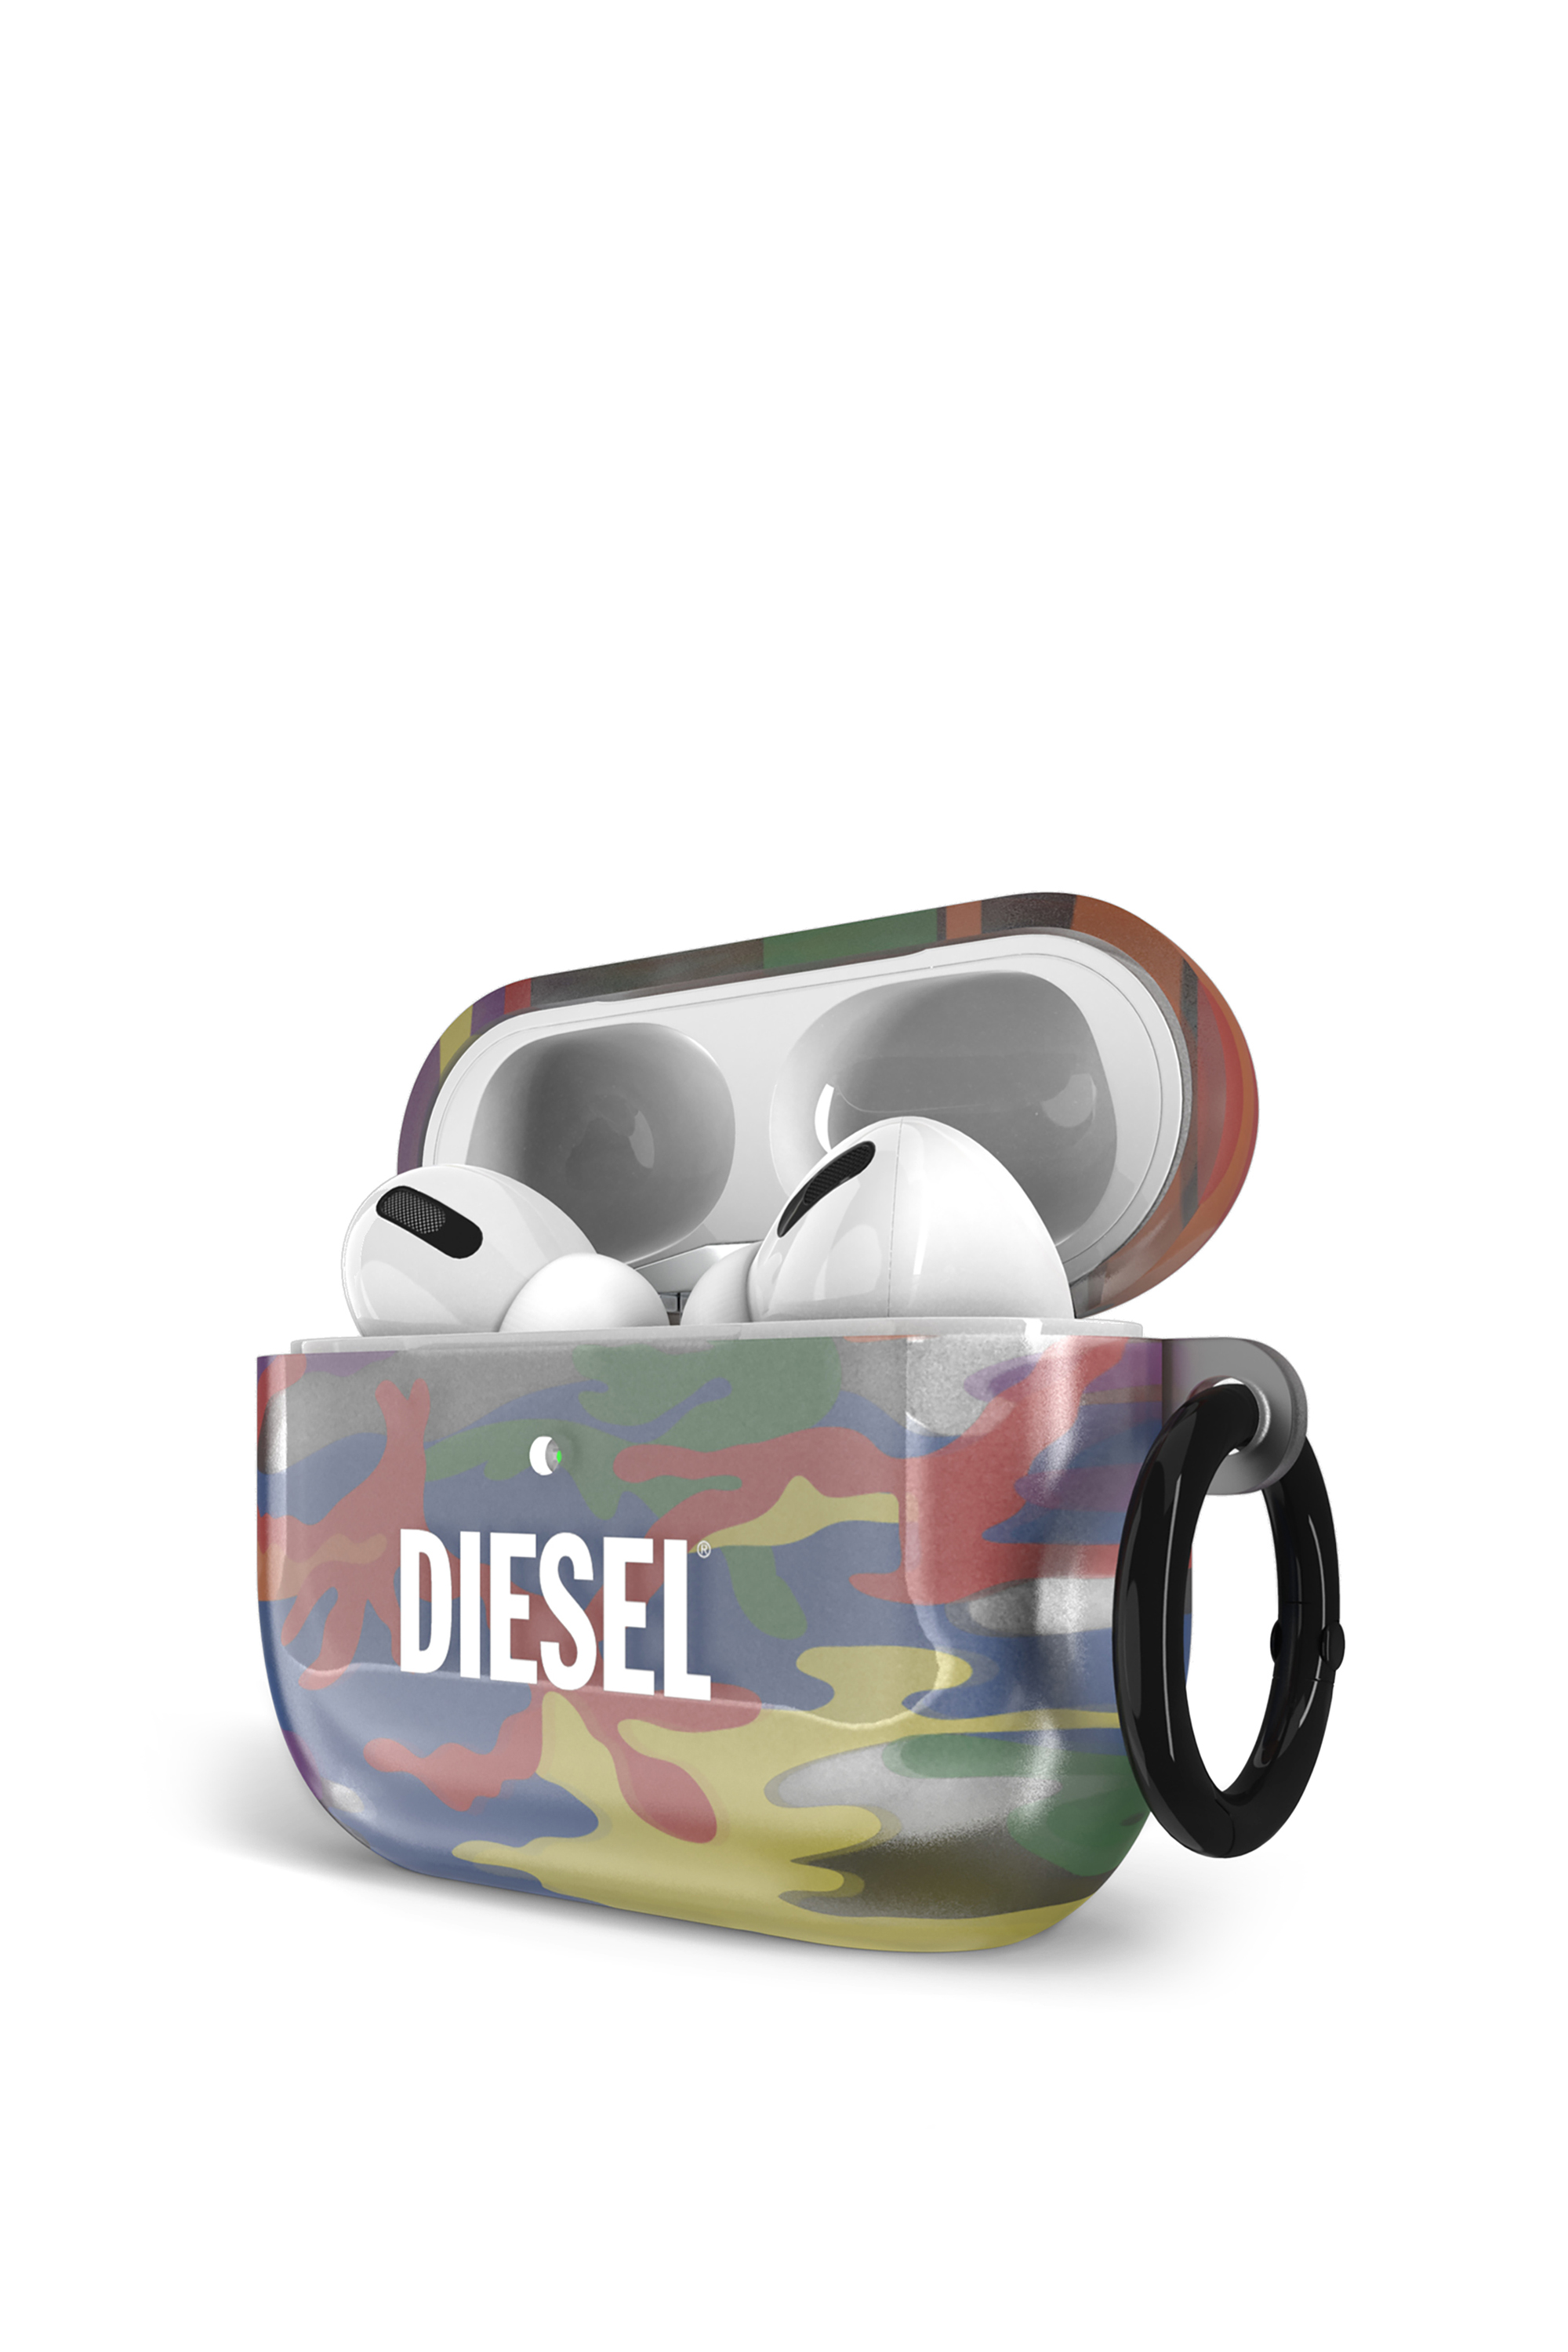 Diesel - 44344   AIRPOD CASE, Bunt - Image 3